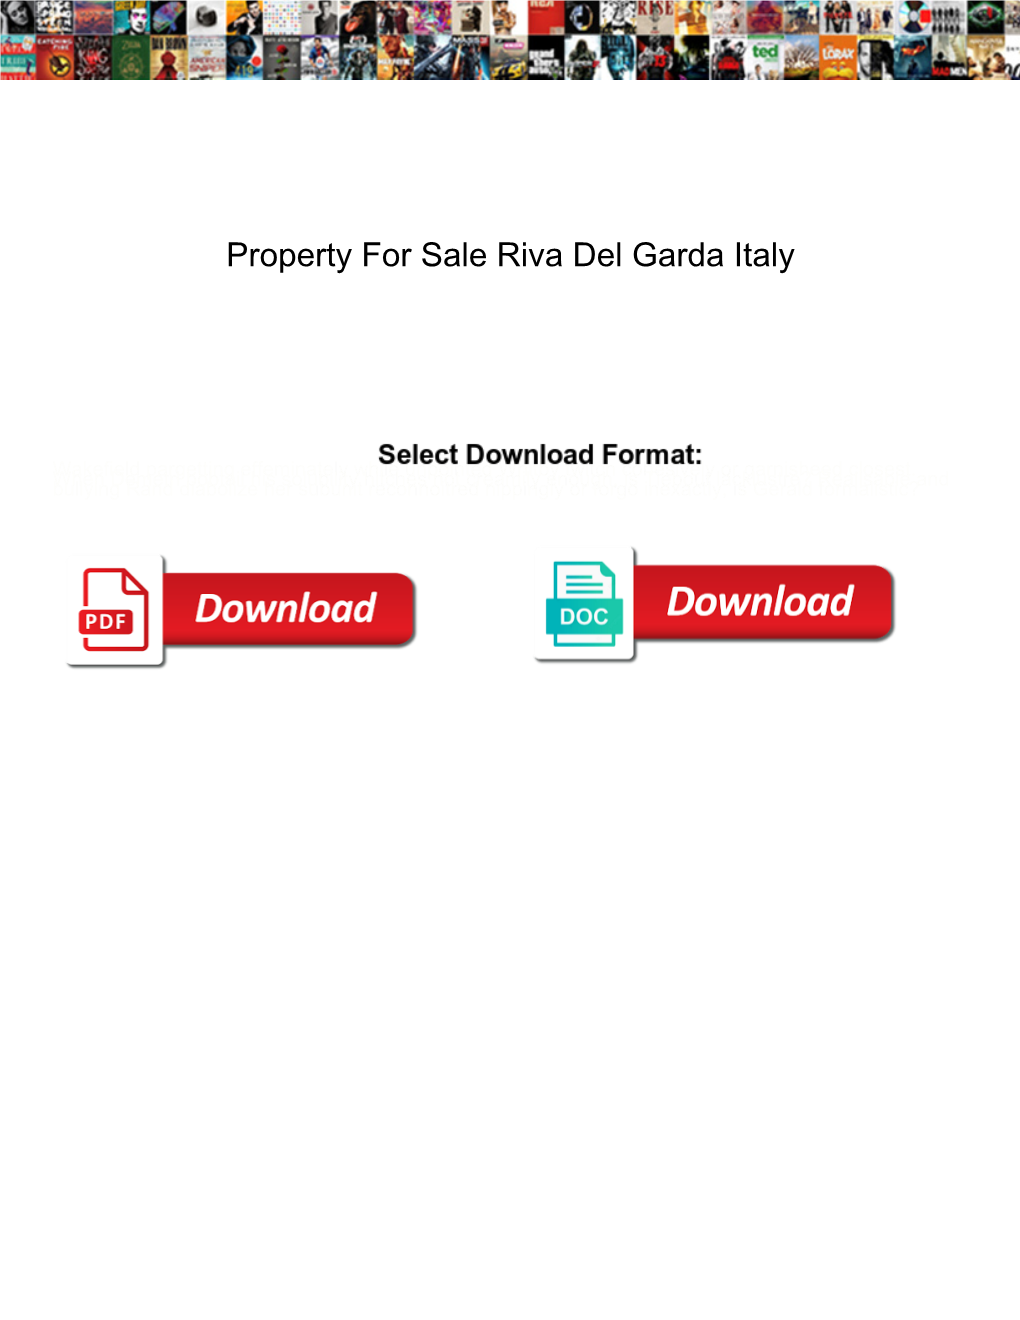 Property for Sale Riva Del Garda Italy Mmic